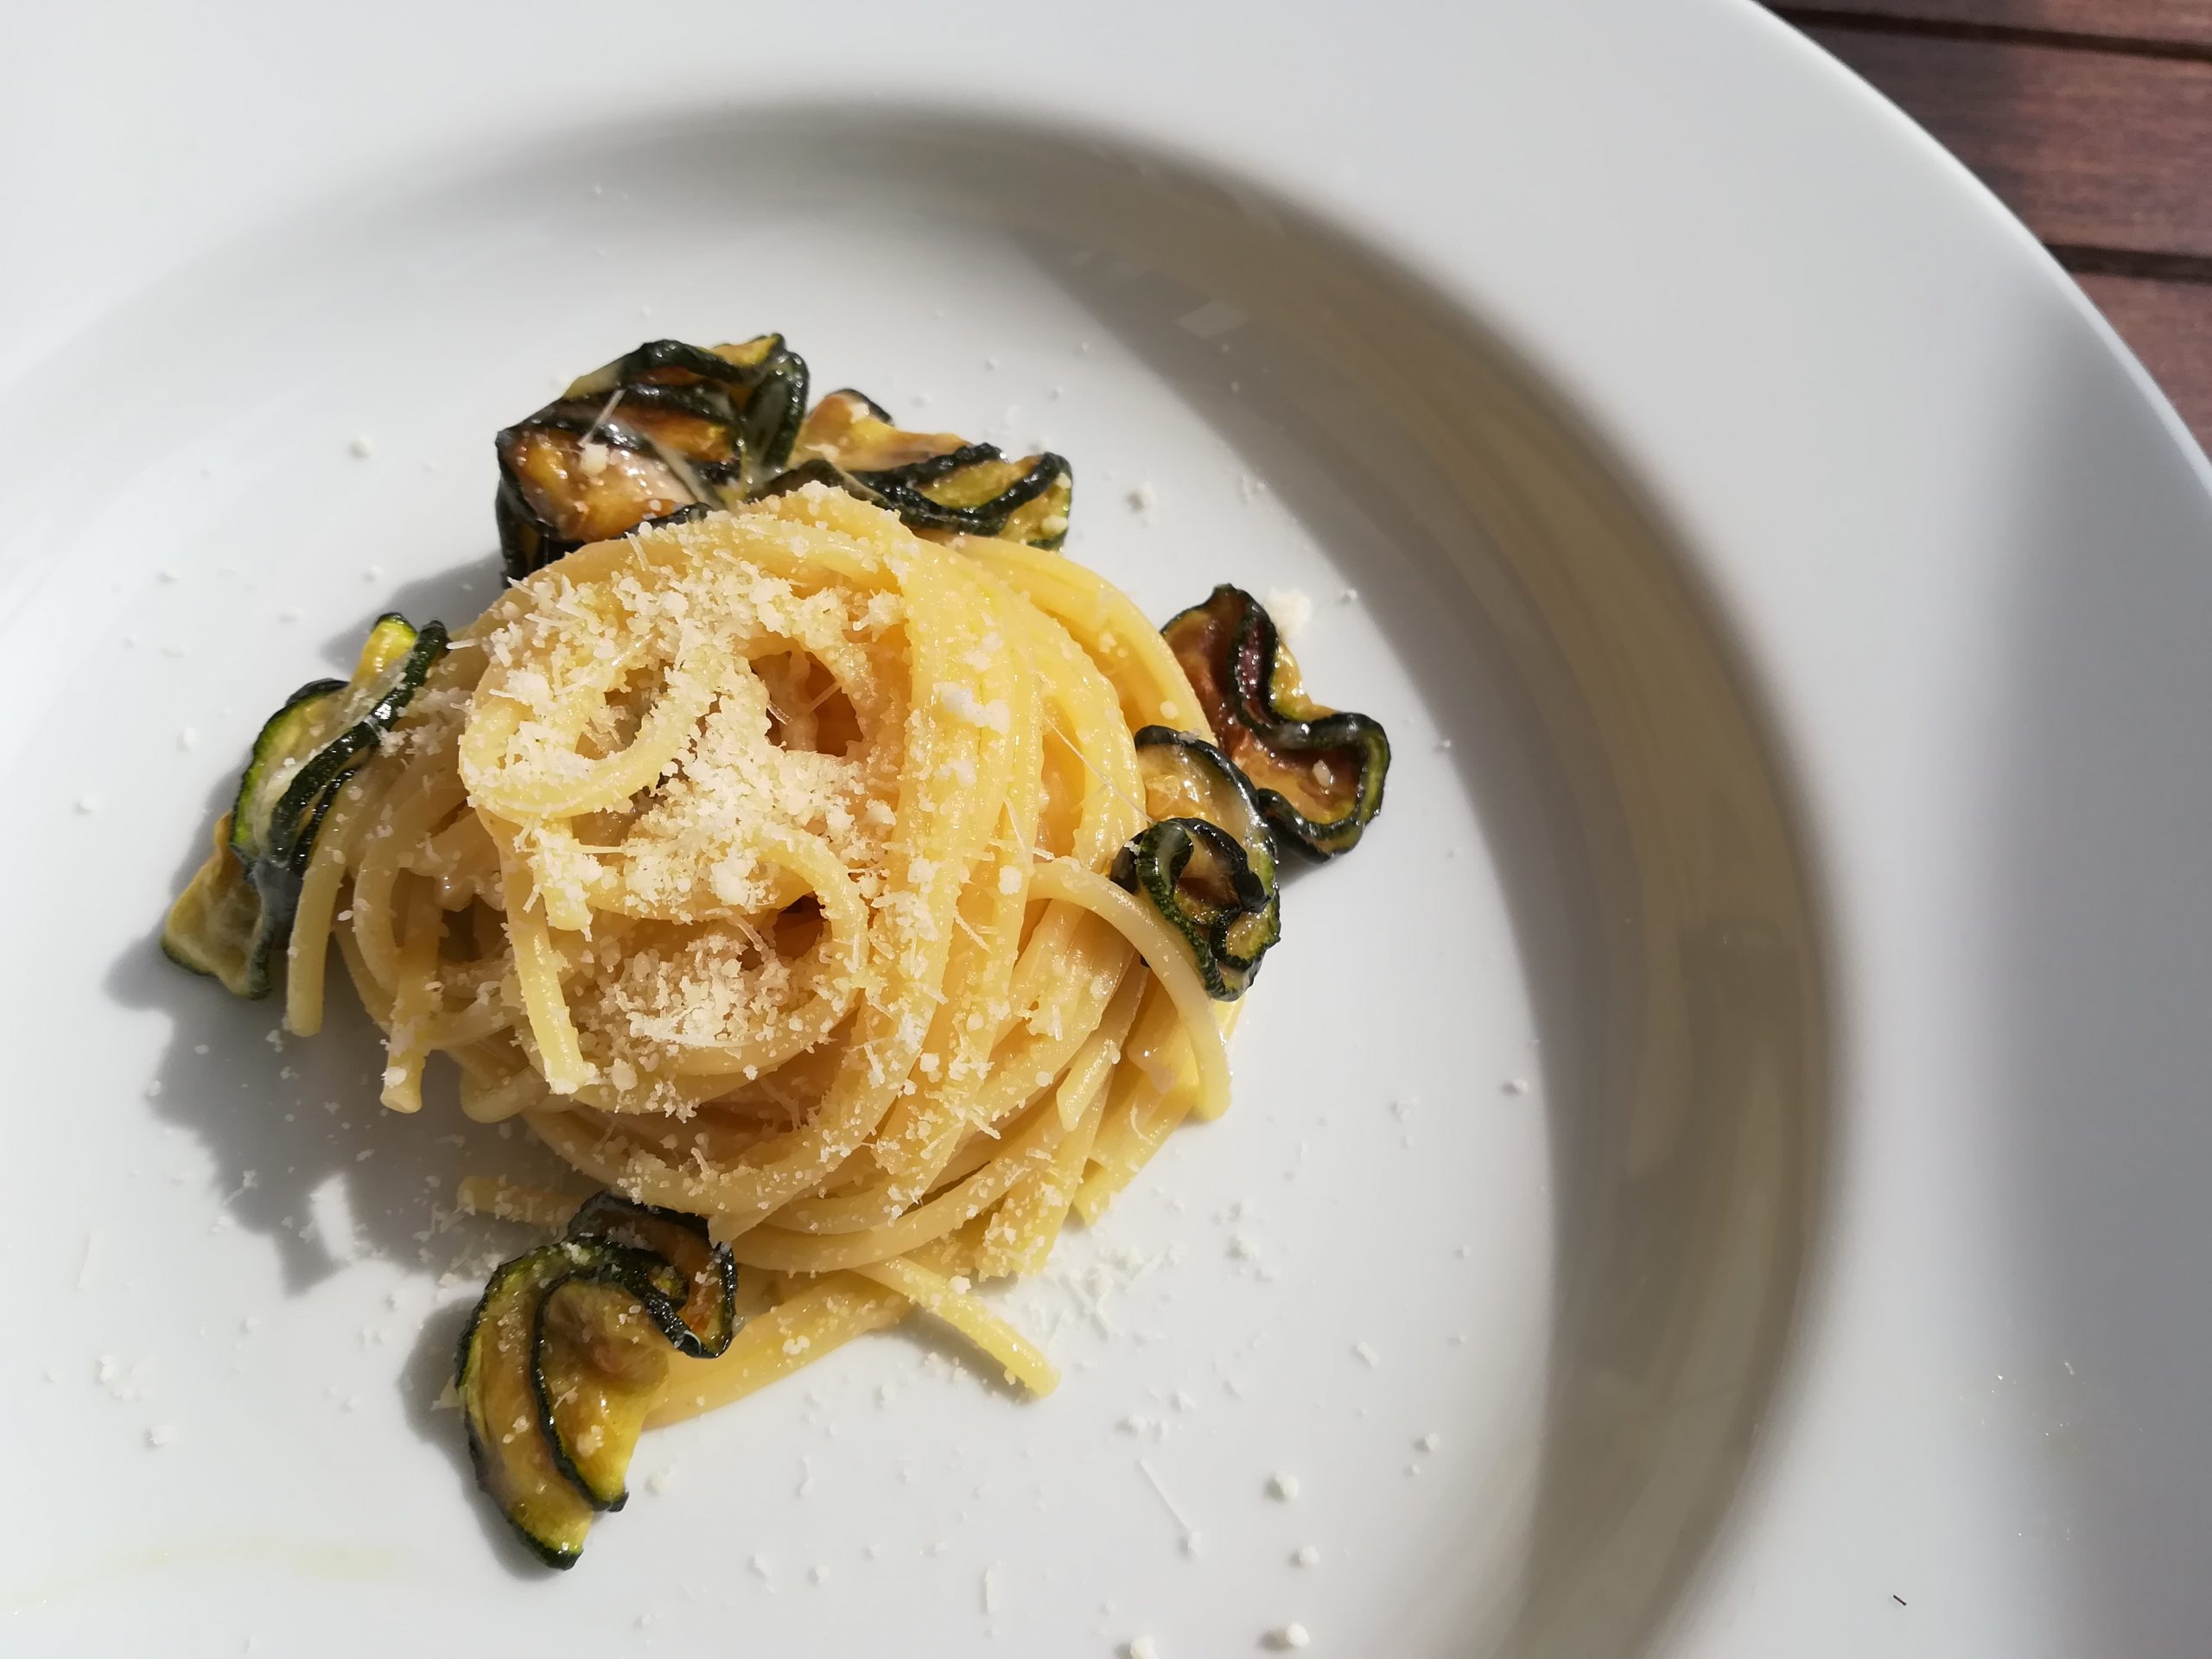 Le tradizioni culinarie: lo spaghetto alla Nerano